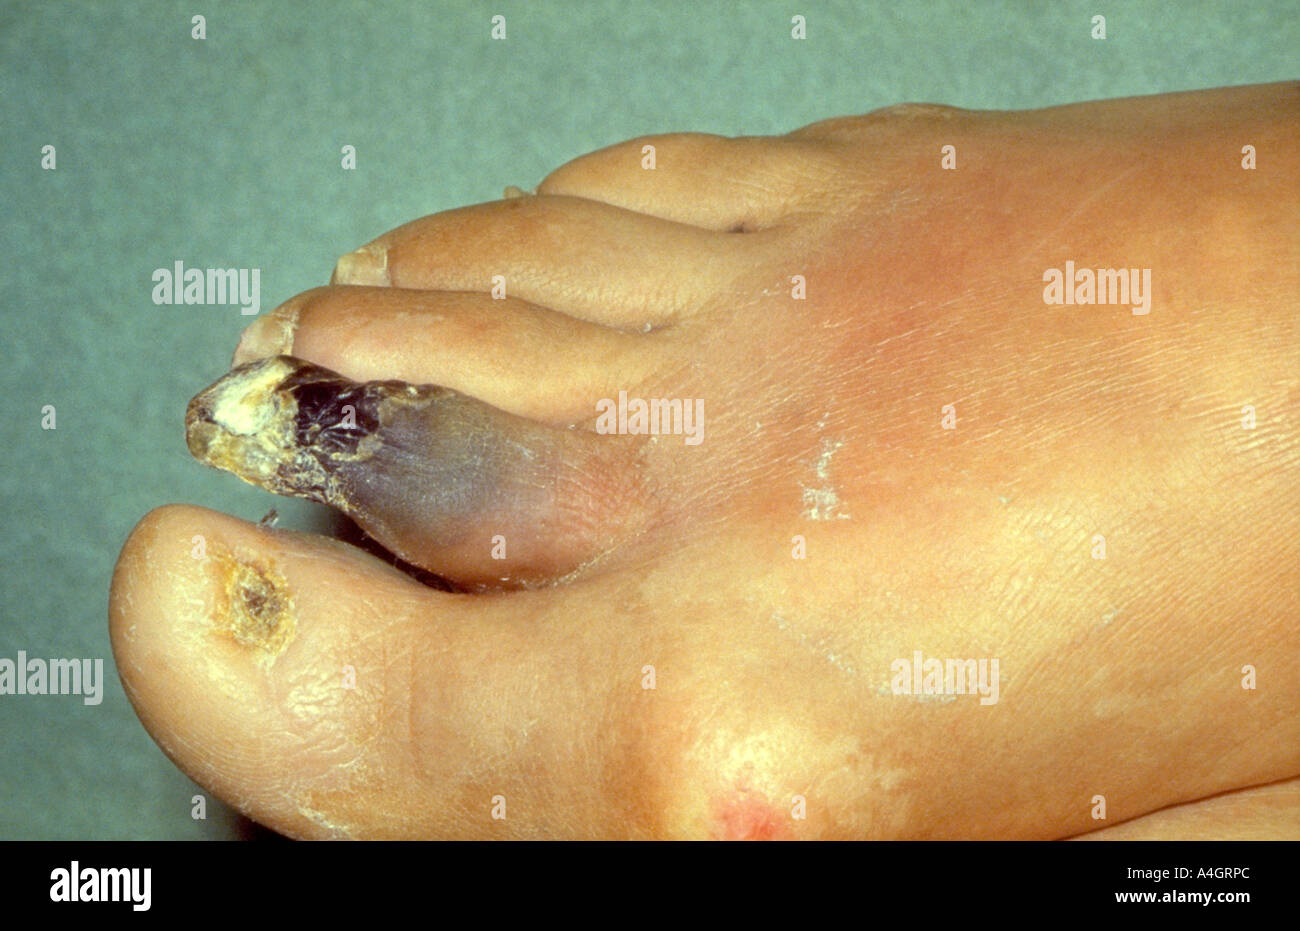 Gangrän ist Nekrose und Fäulnis der Gewebe, in der Regel an den Füßen durch Occulusive arteriellen Veränderungen Stockfoto